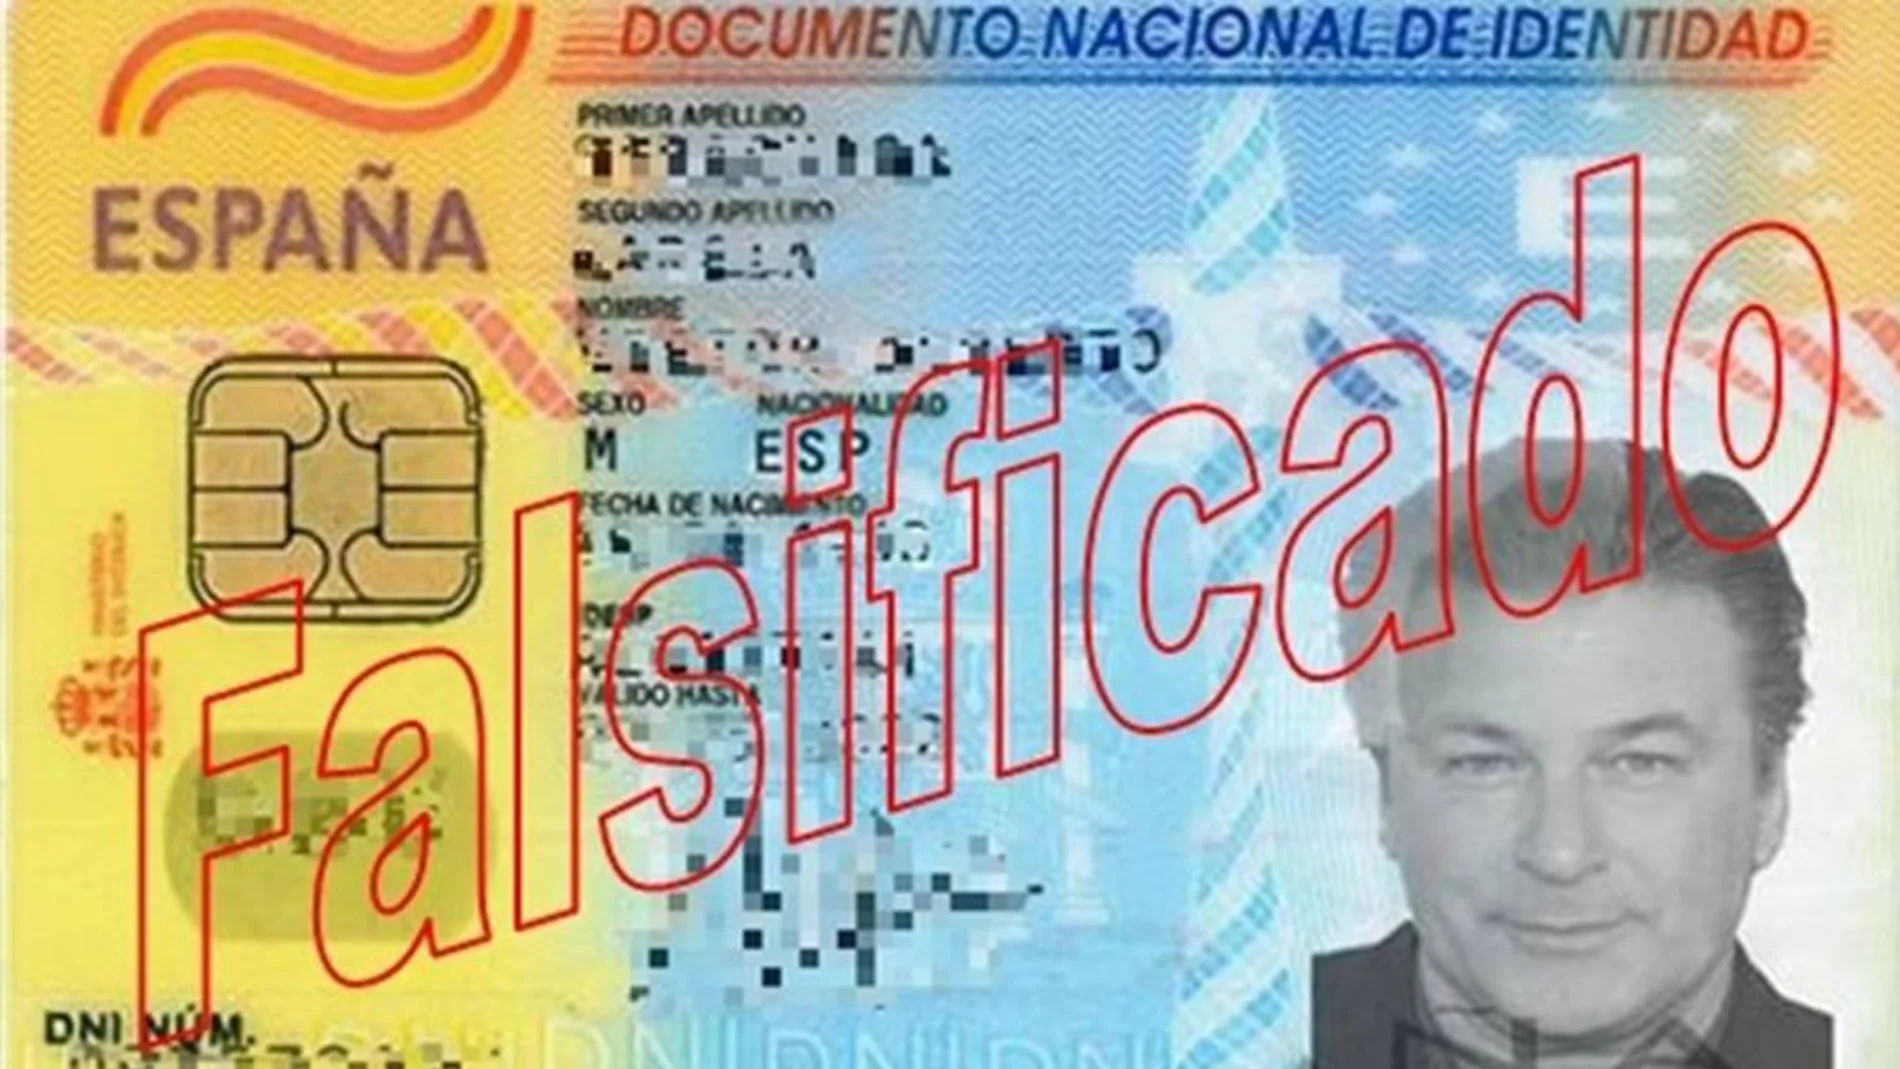 Carnet falso con la foto de Alec Baldwin. Foto: @policíanacional